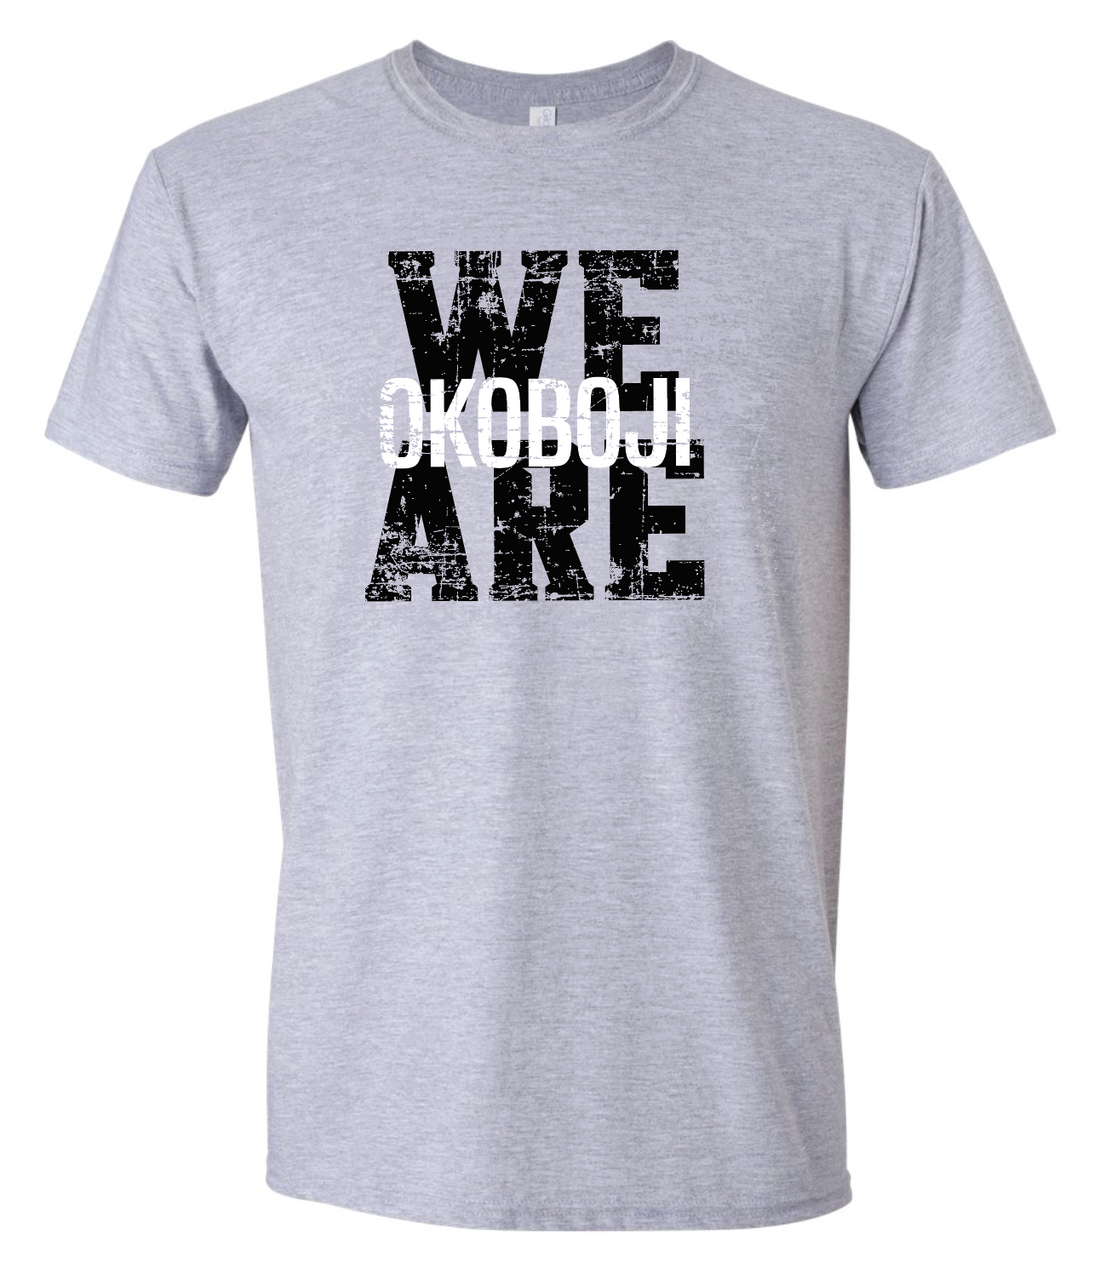 We Are Okoboji Pioneers Gildan Softstyle Tshirt (Youth & Adult) | O23